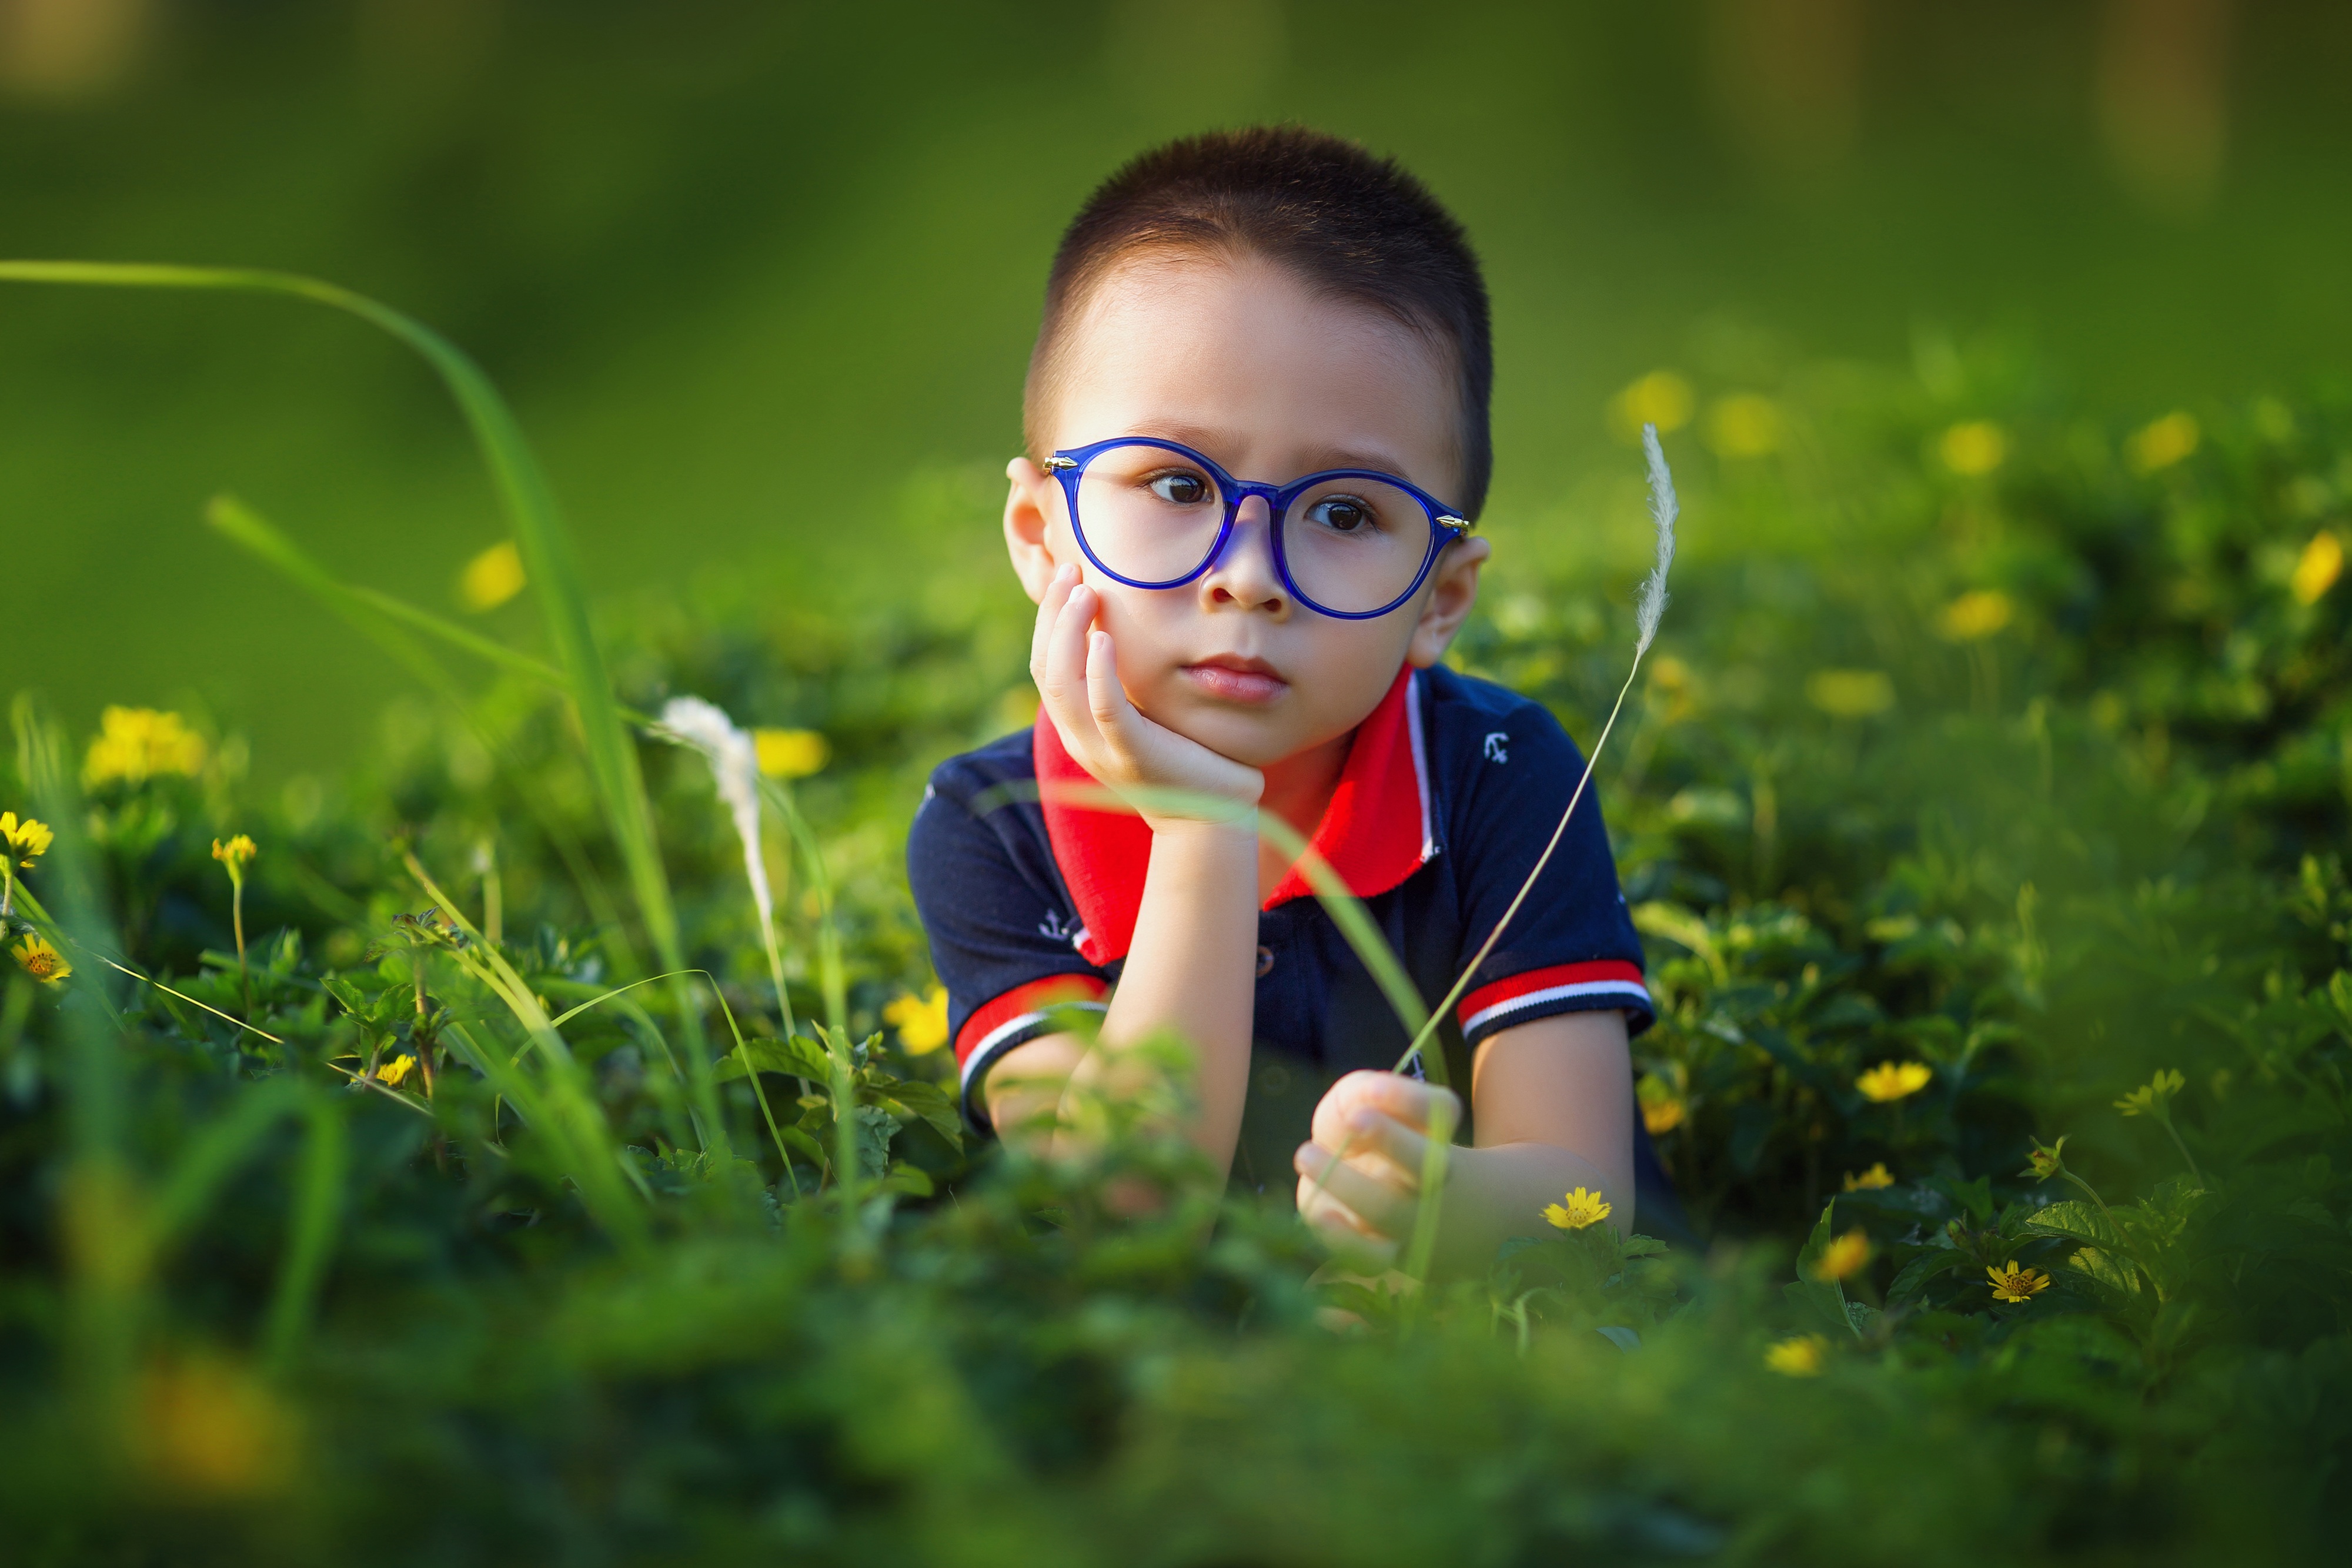 一个戴眼镜的男孩坐在高高的绿草地上